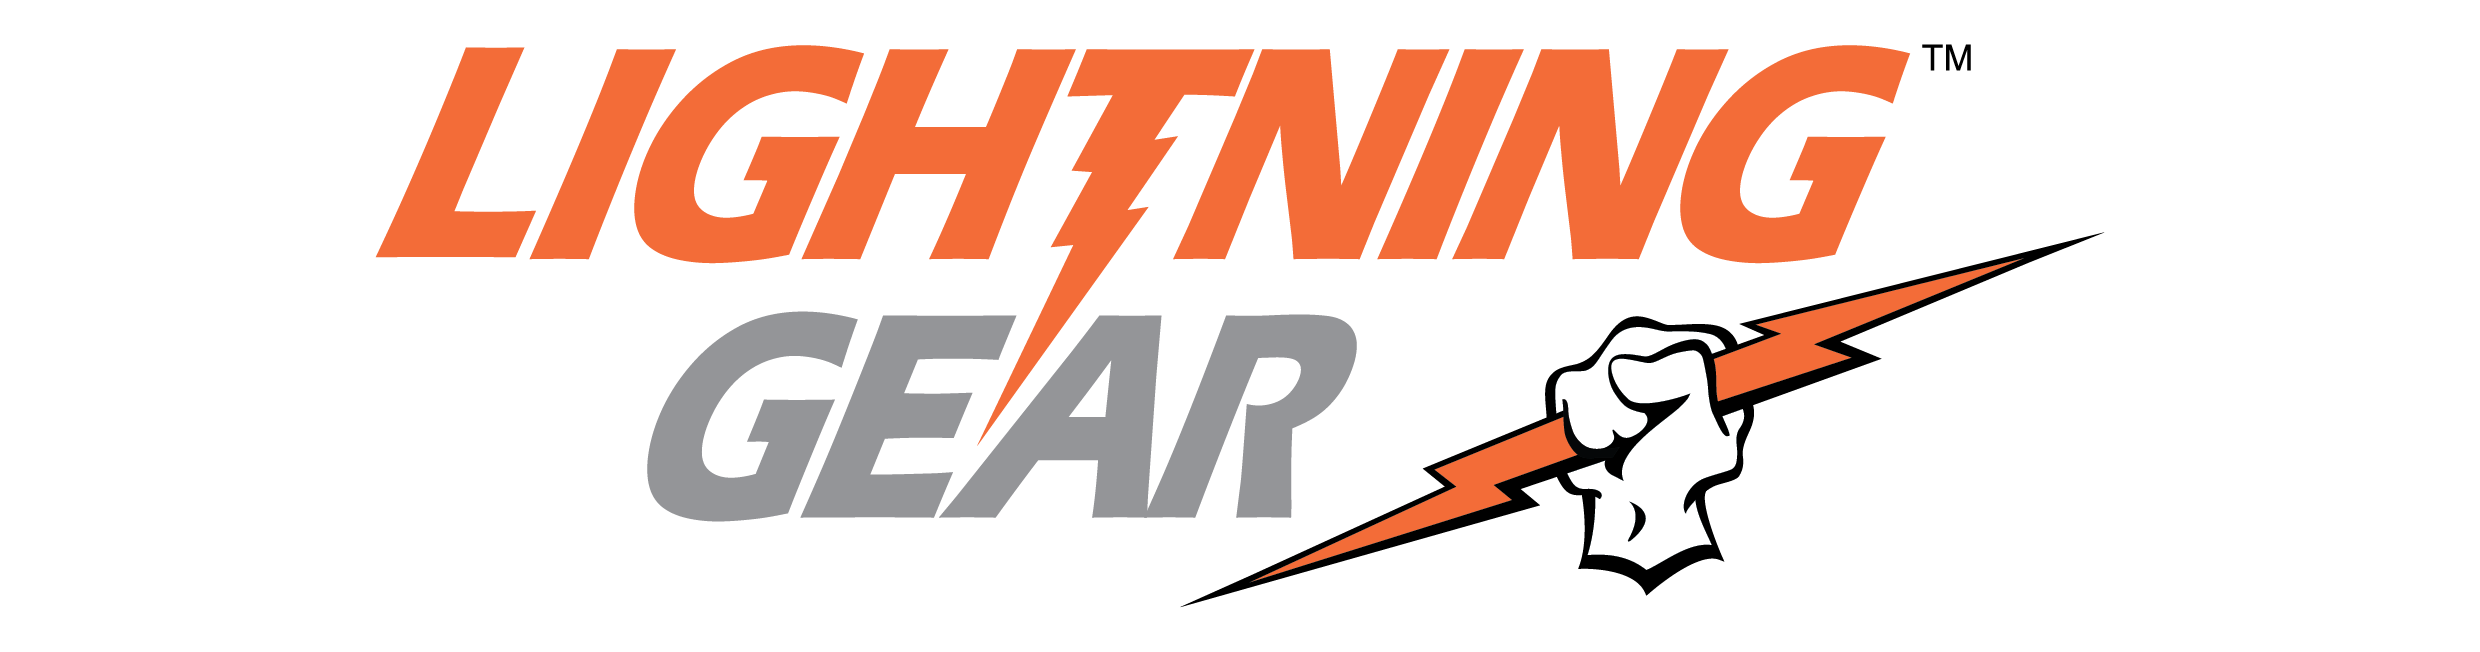 Lightning Gear™